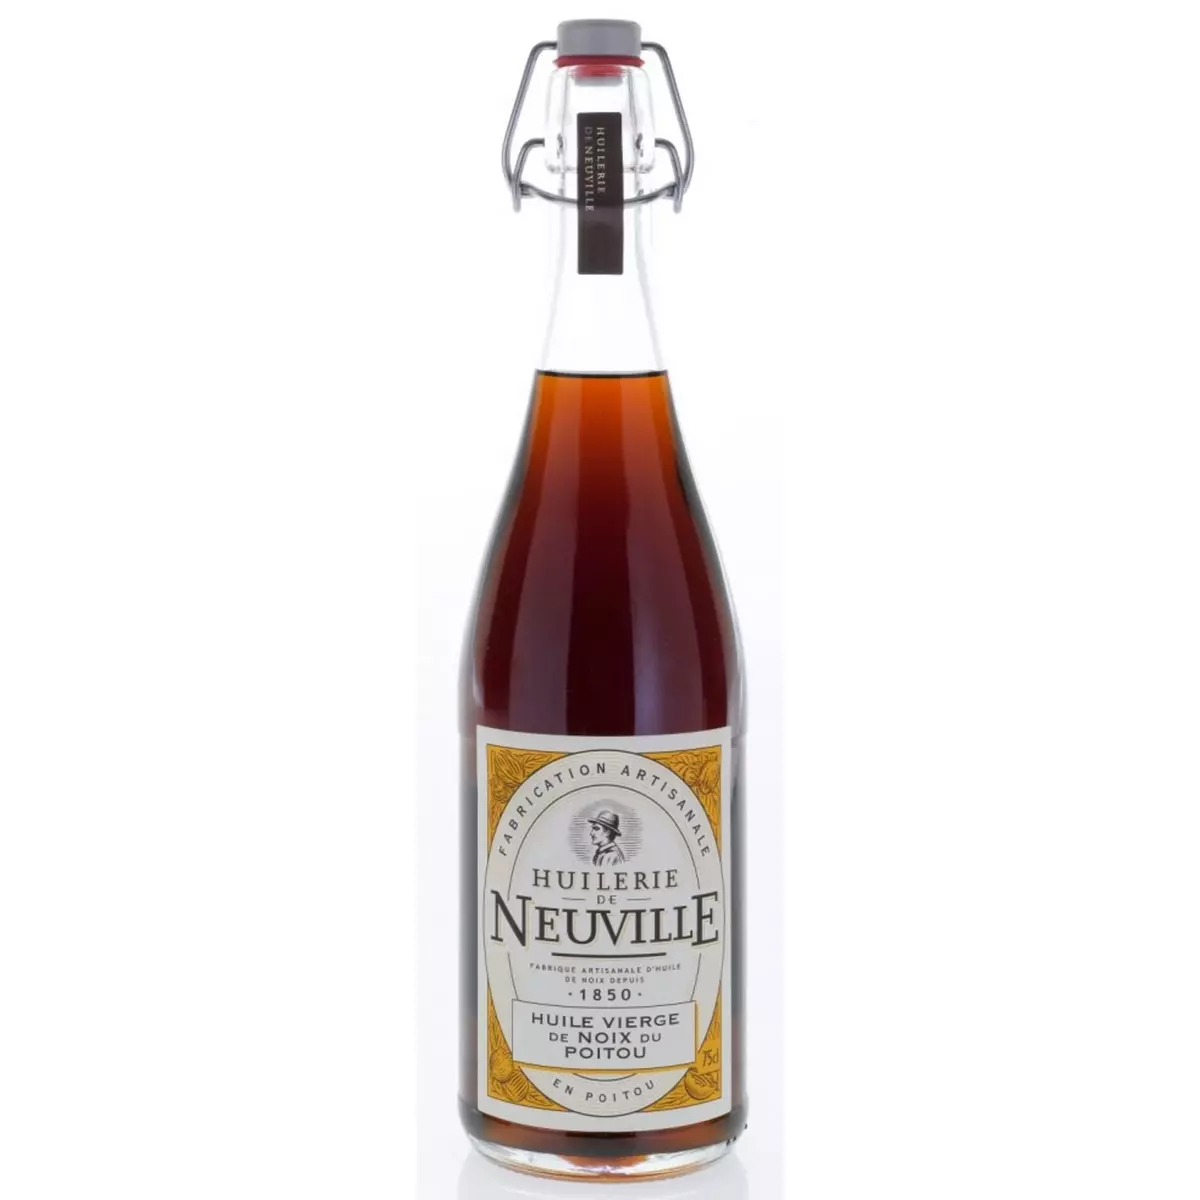 HUILERIE DE NEUVILLE Huile vierge de noix du Poitou 1l